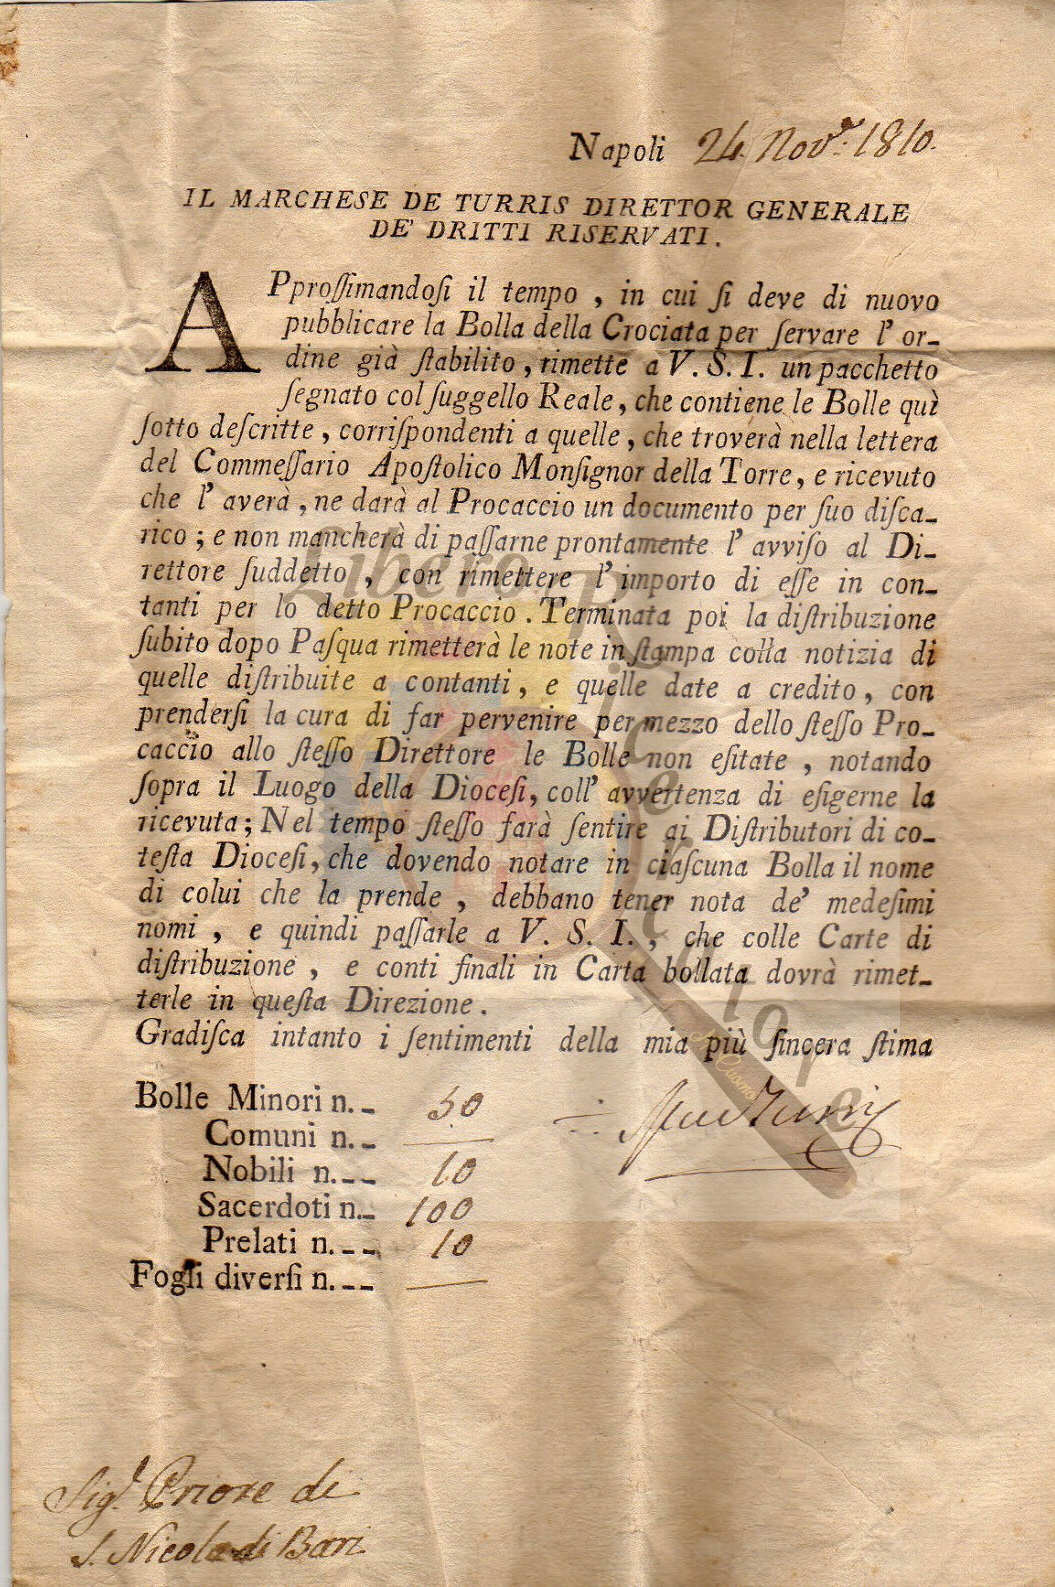 Documento a firma Marchese de Turris, collezione Gaetano Fontana